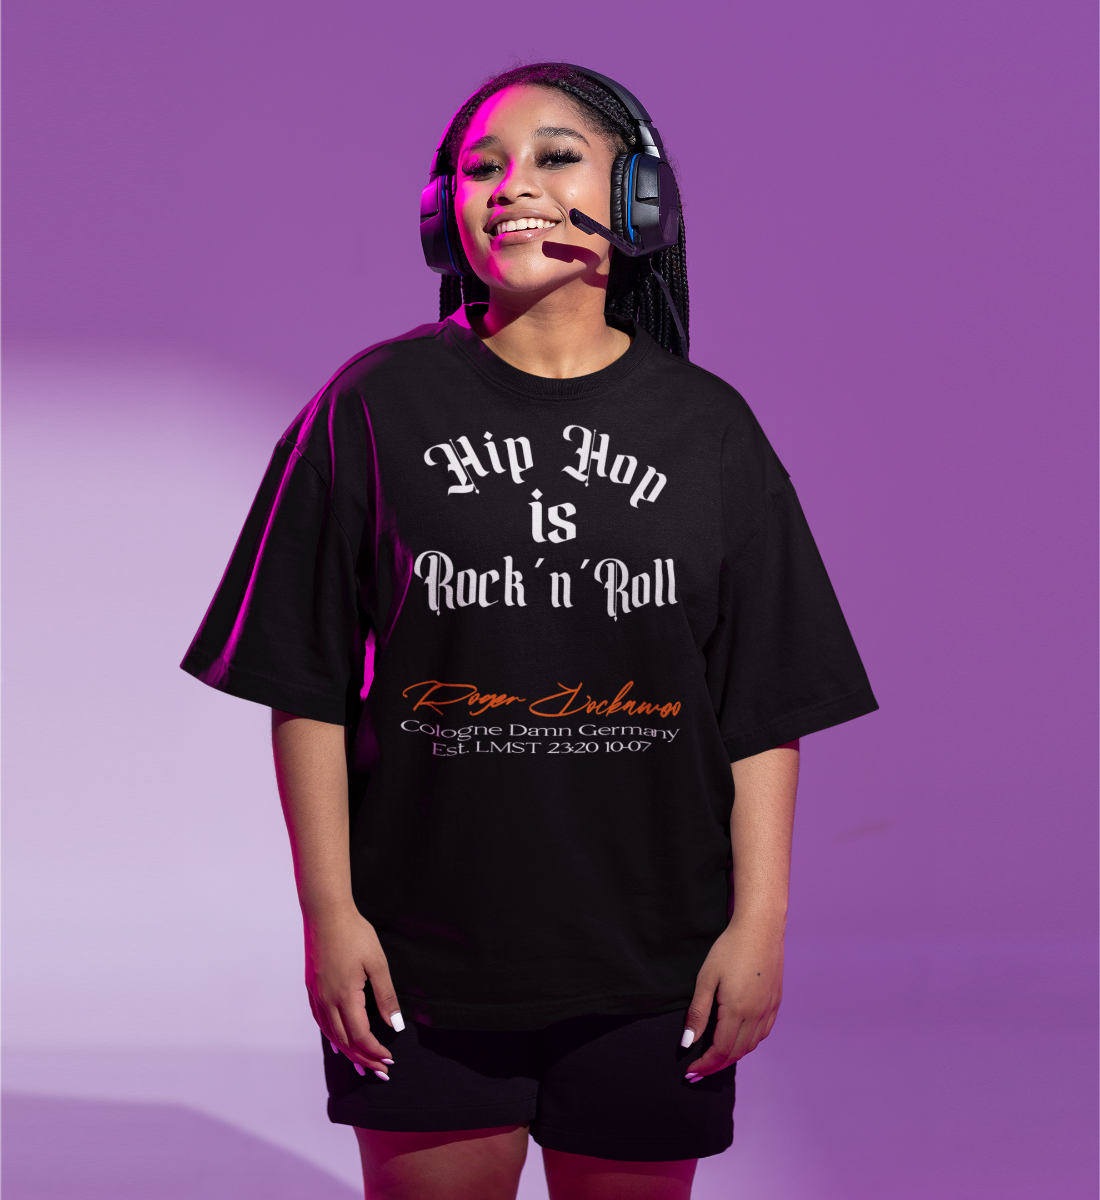 Schwarzes T-Shirt Unisex Oversize Fit für Frauen und Männer bedruckt mit dem Design der Roger Rockawoo Kollektion Hip Hop is Rocknroll